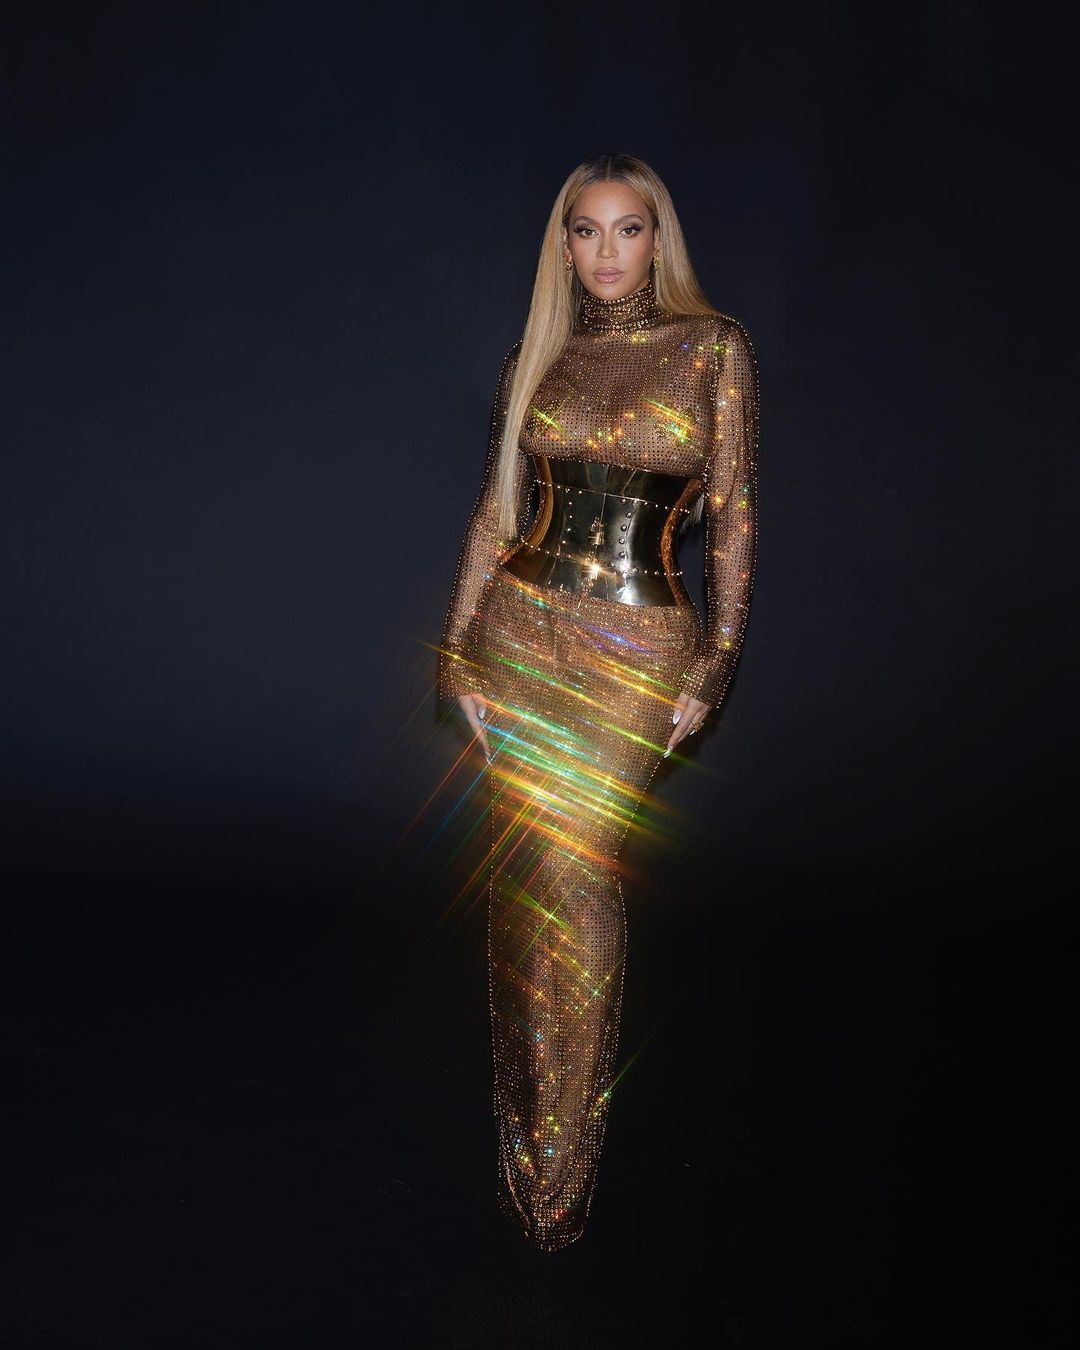 Fotos n°2 : Beyonce brilla con un vestido transparente!